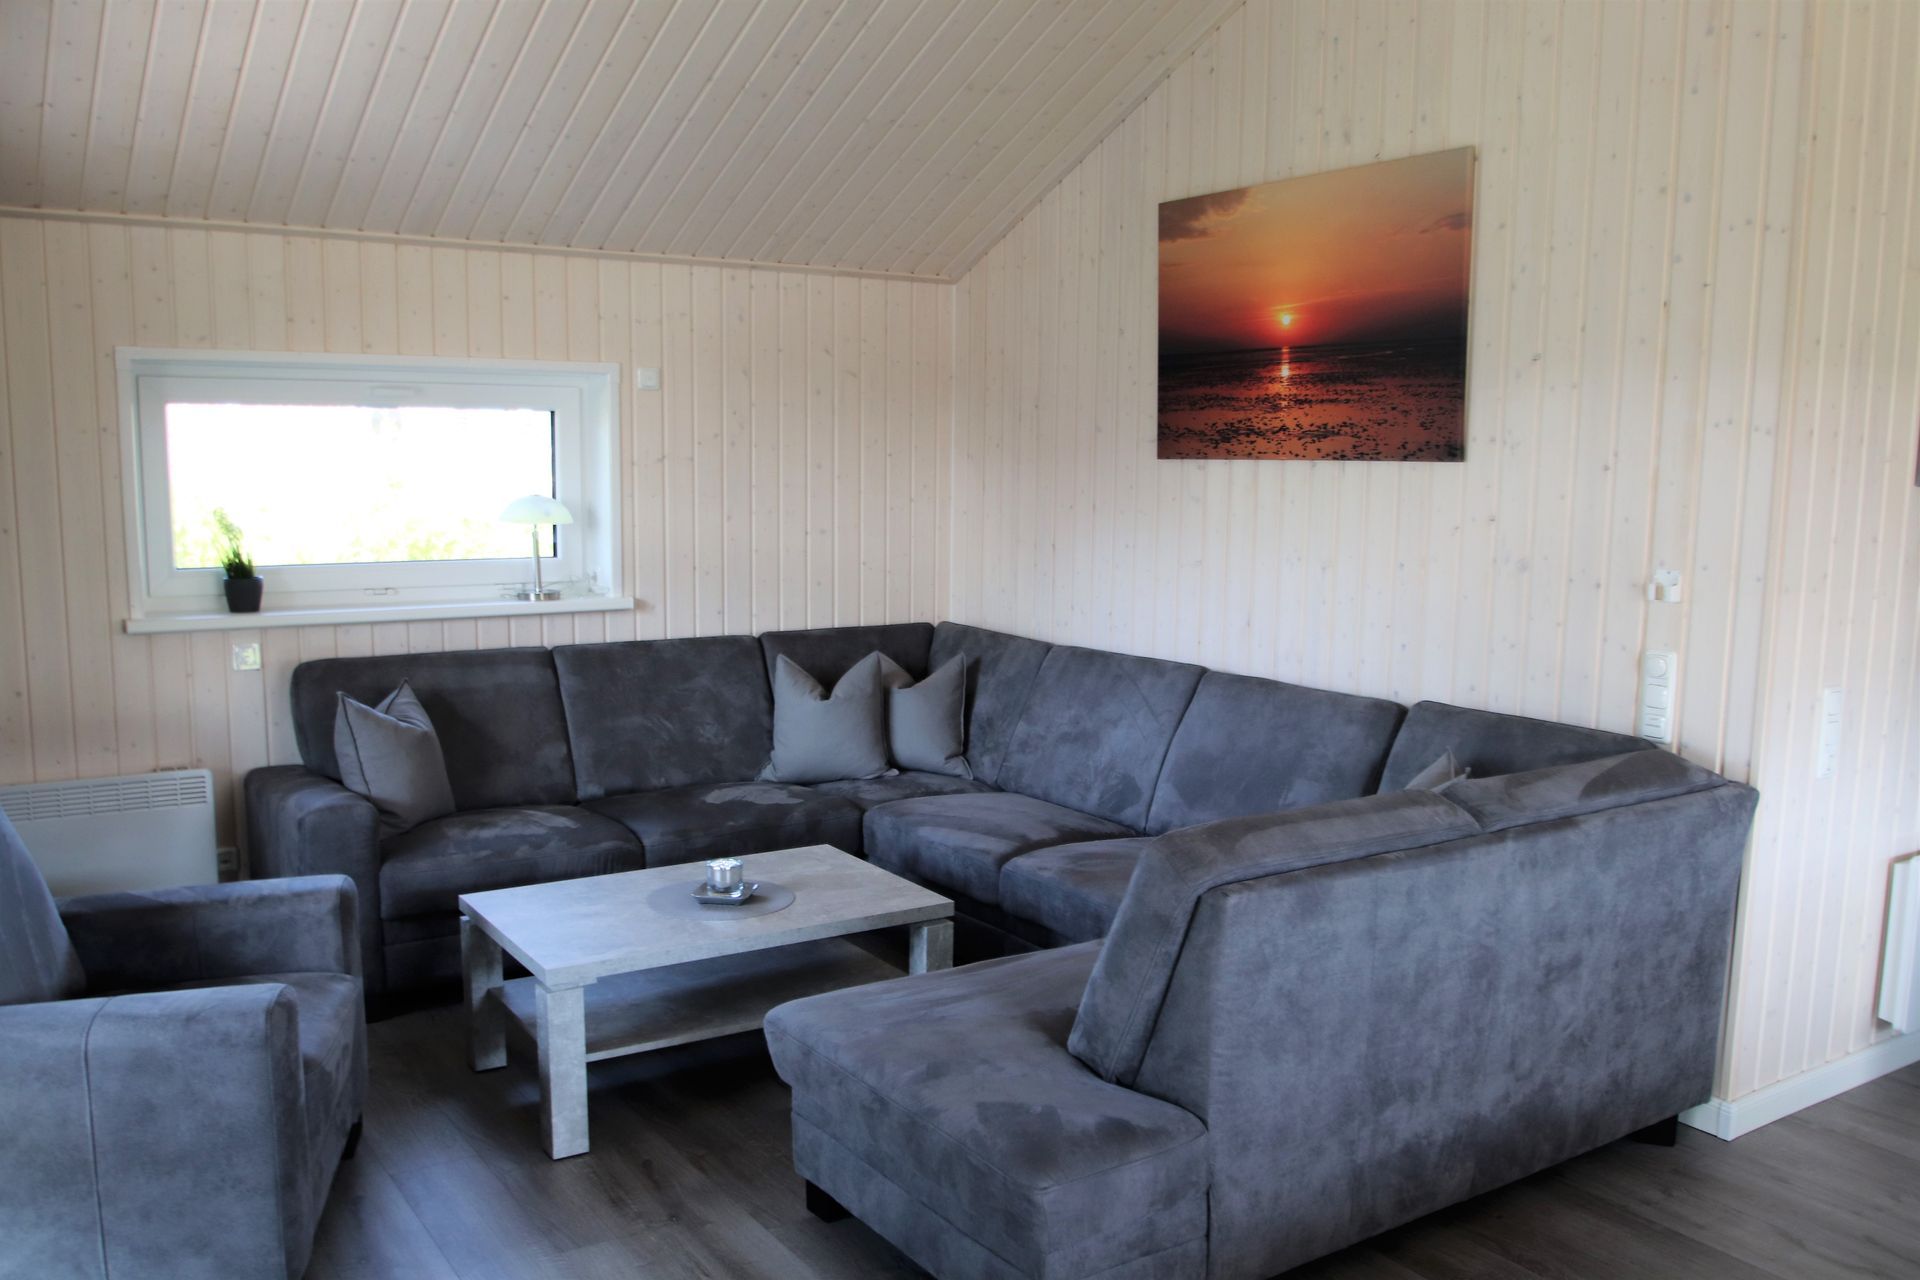 Couchgarnitur im Wohnraum Ferienhaus barrierefrei Anwaß 16e 25718 Friedrichskoog Nordsee